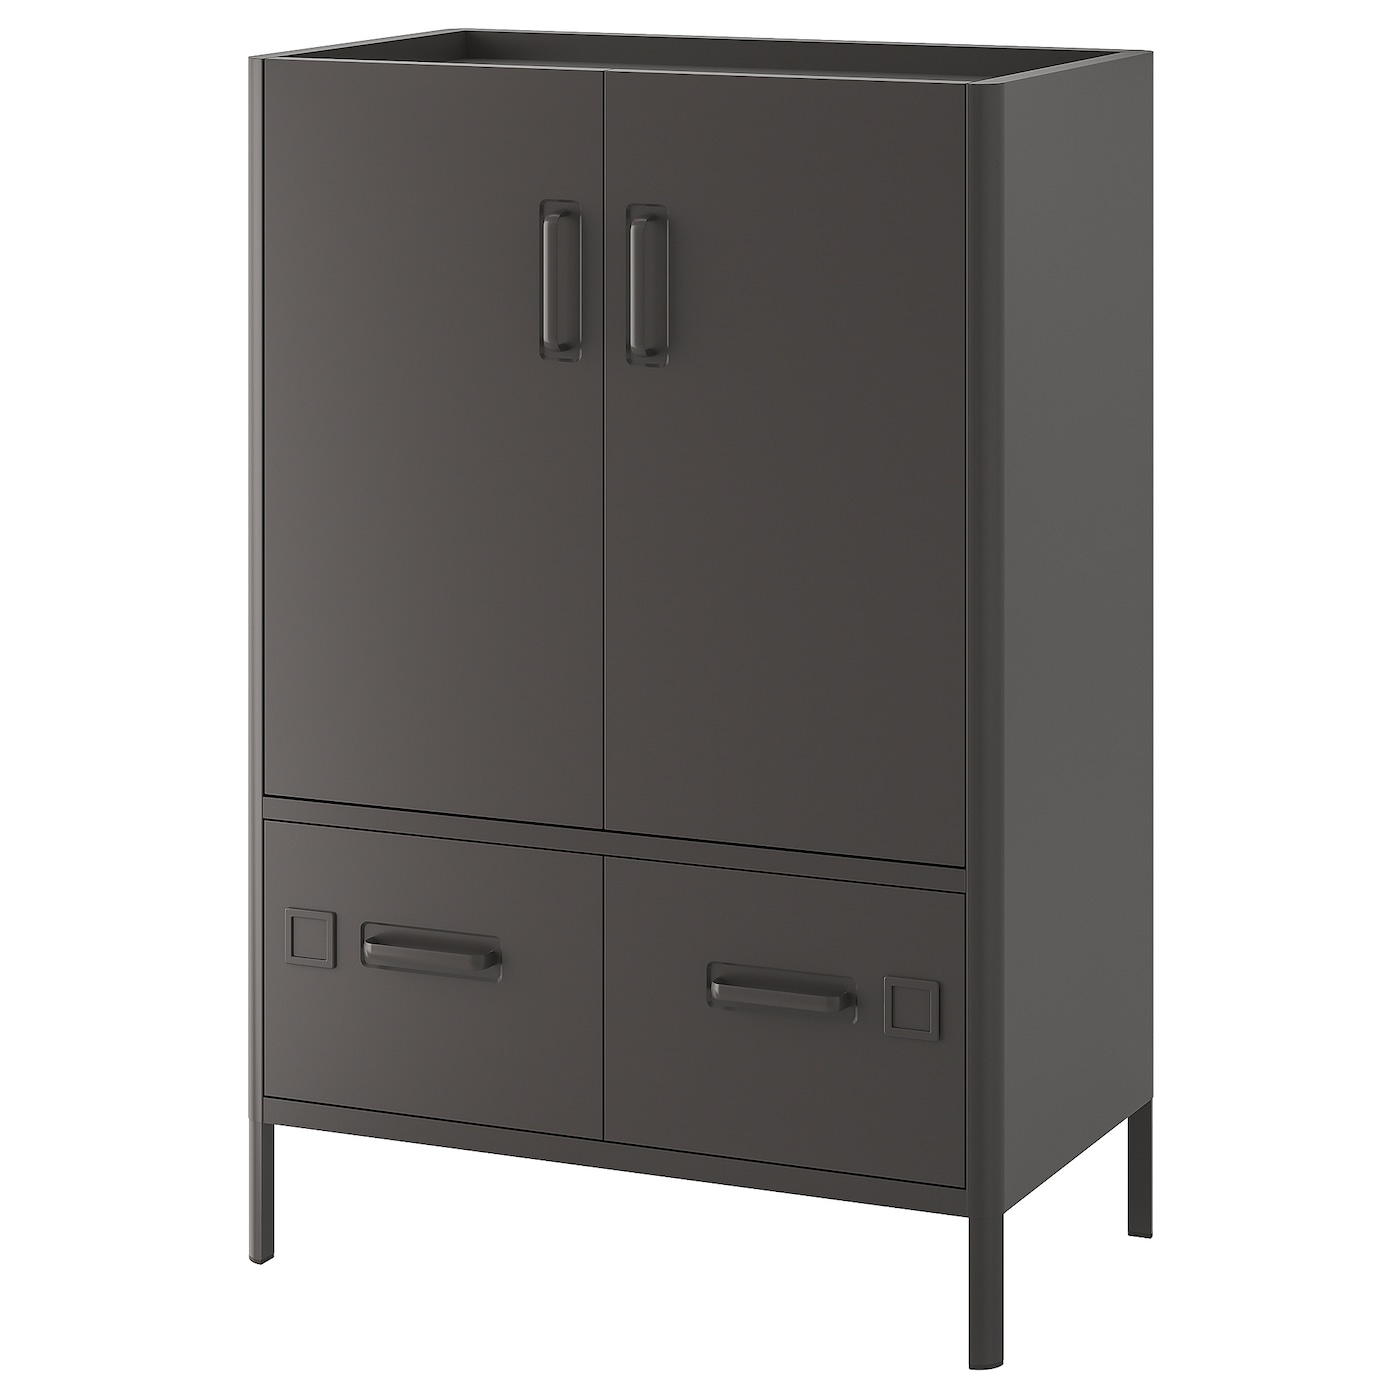 Офисный шкаф - IKEA IDÅSEN/IDASEN, темно-серый, 80x47x119 см, ИДОСЕН ИКЕА